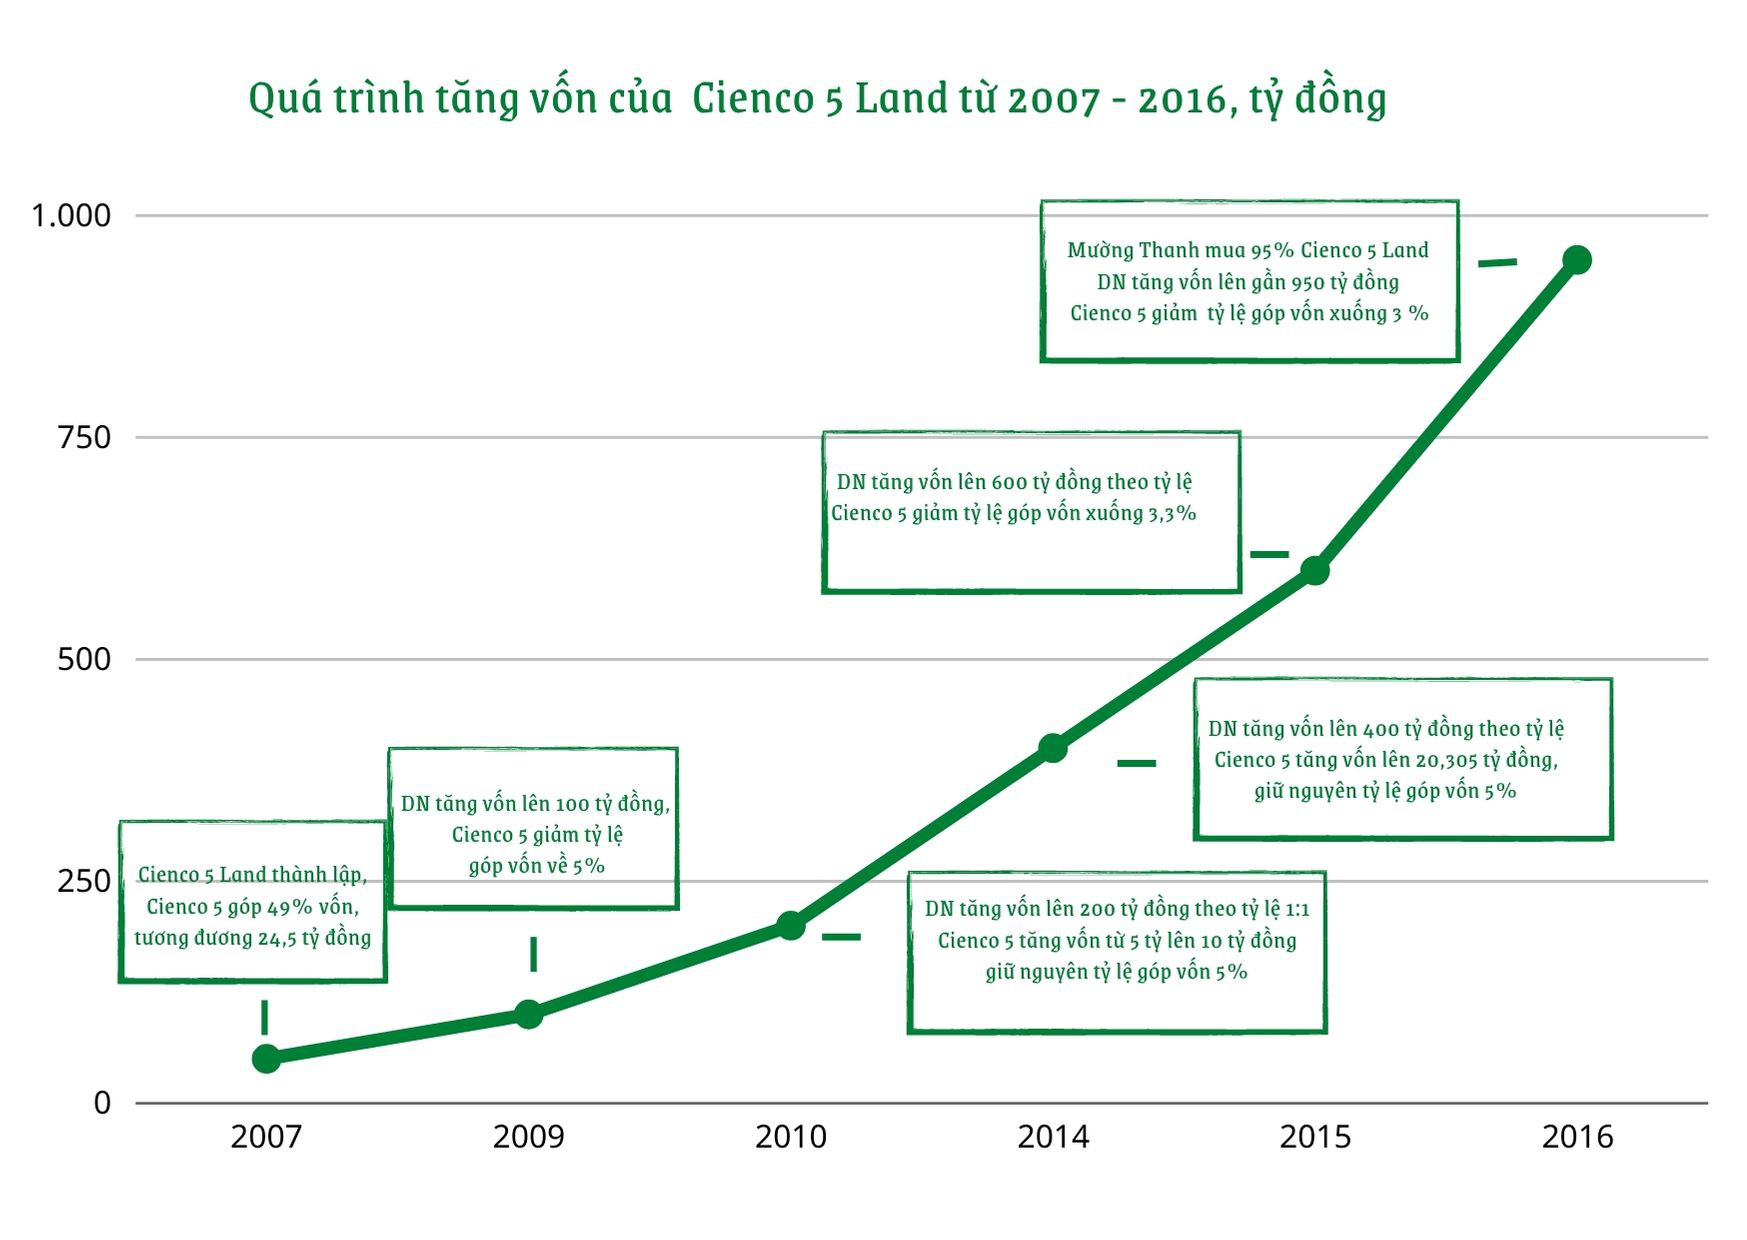 Quá trình tăng vốn của Cienco 5 Land từ 2007-2016